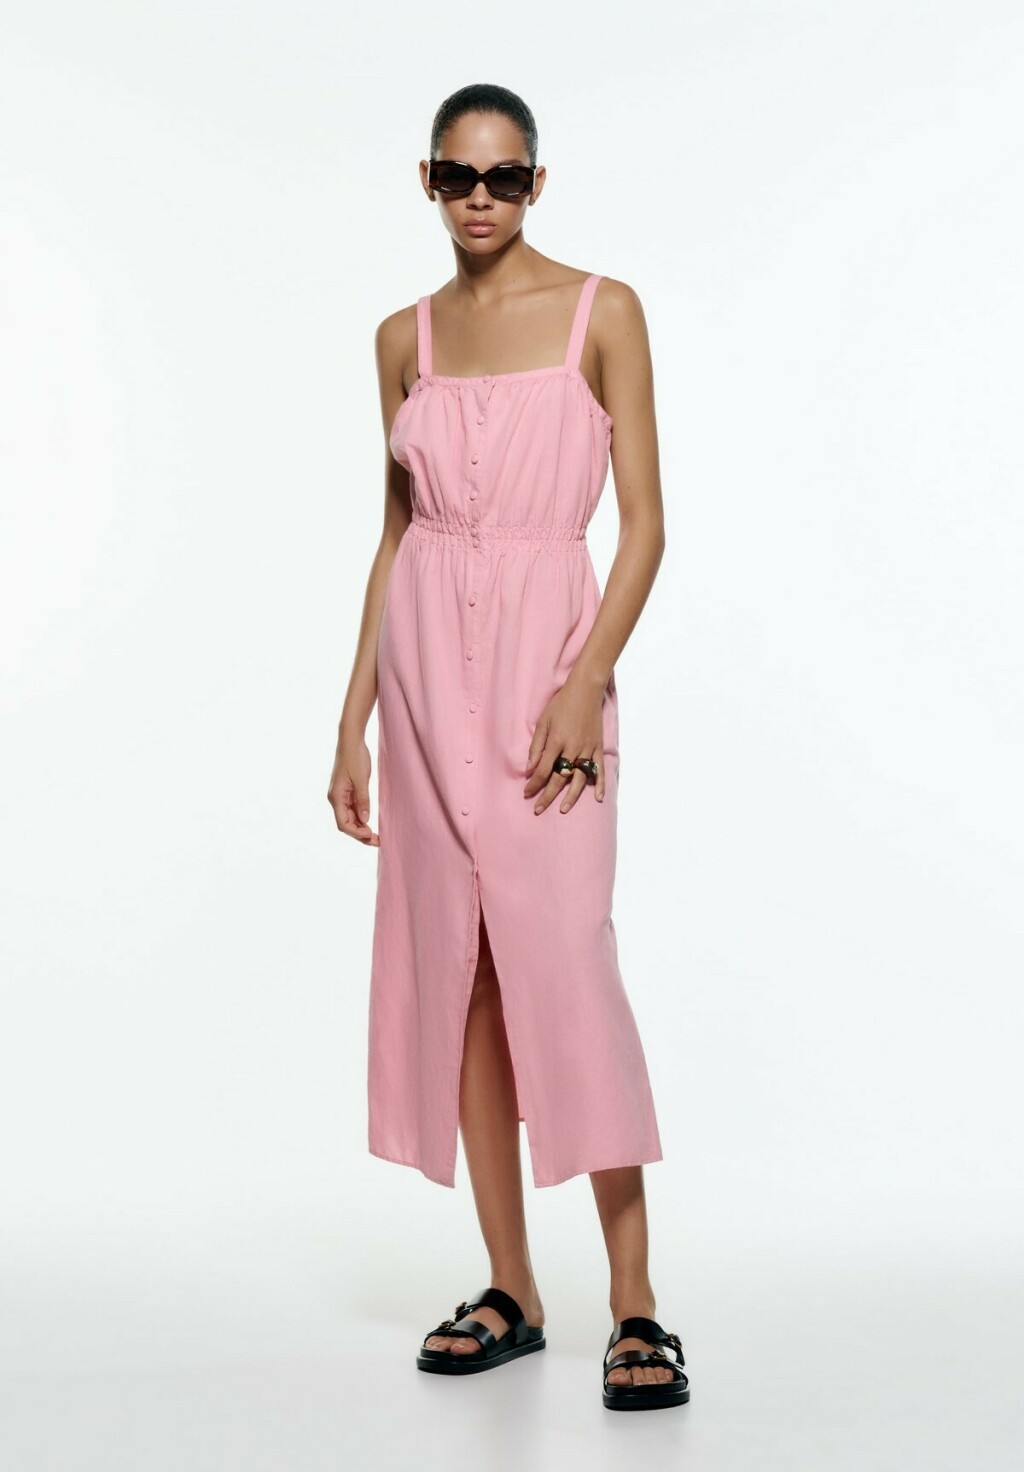 Ponuda ružičastih haljina u trgovinama - 1